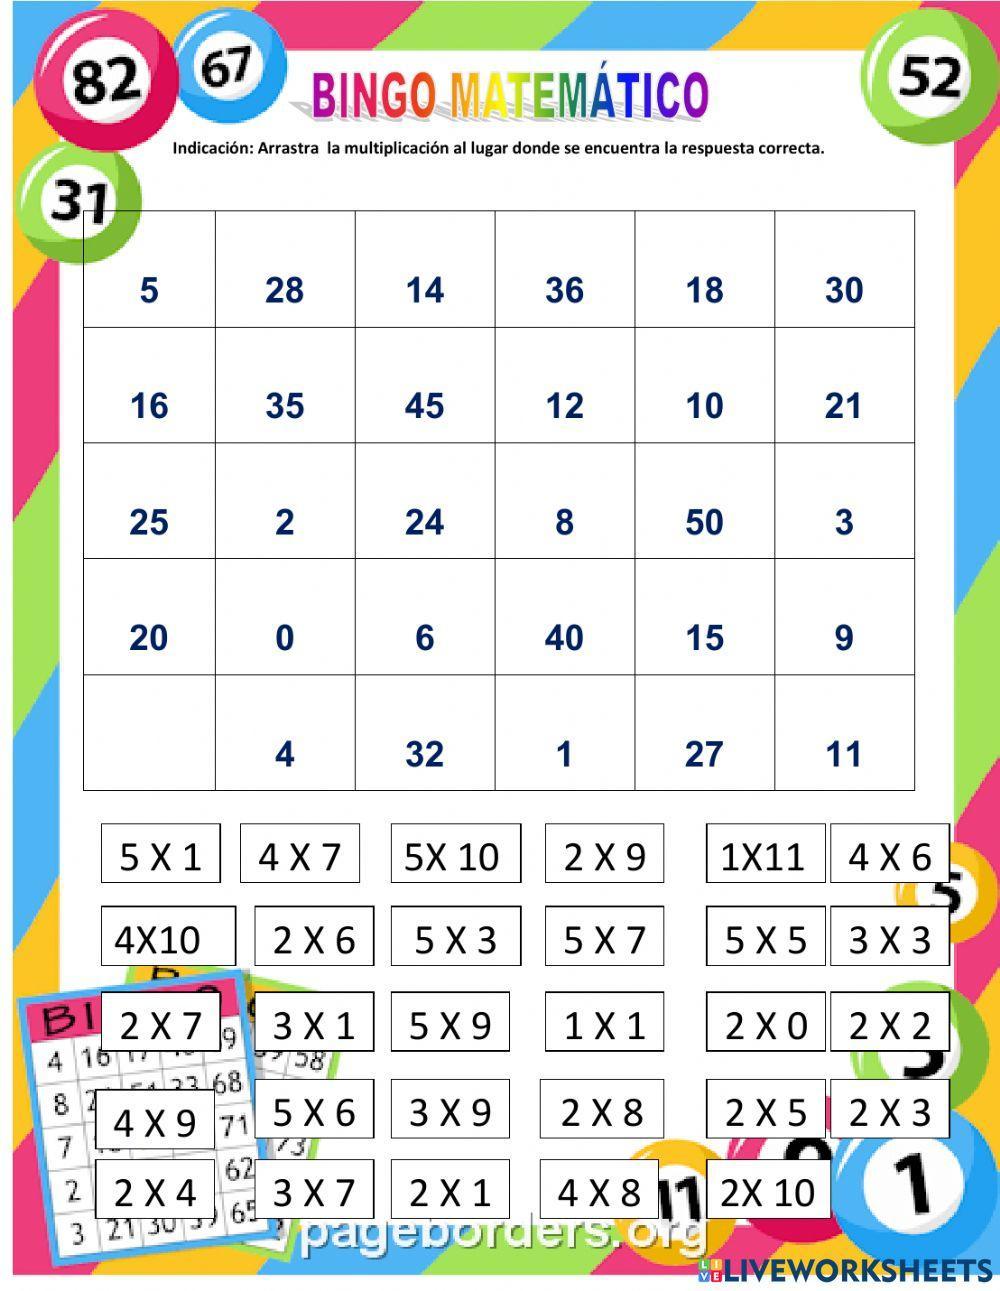 Bingo matemático de las tablas del 2 al 5